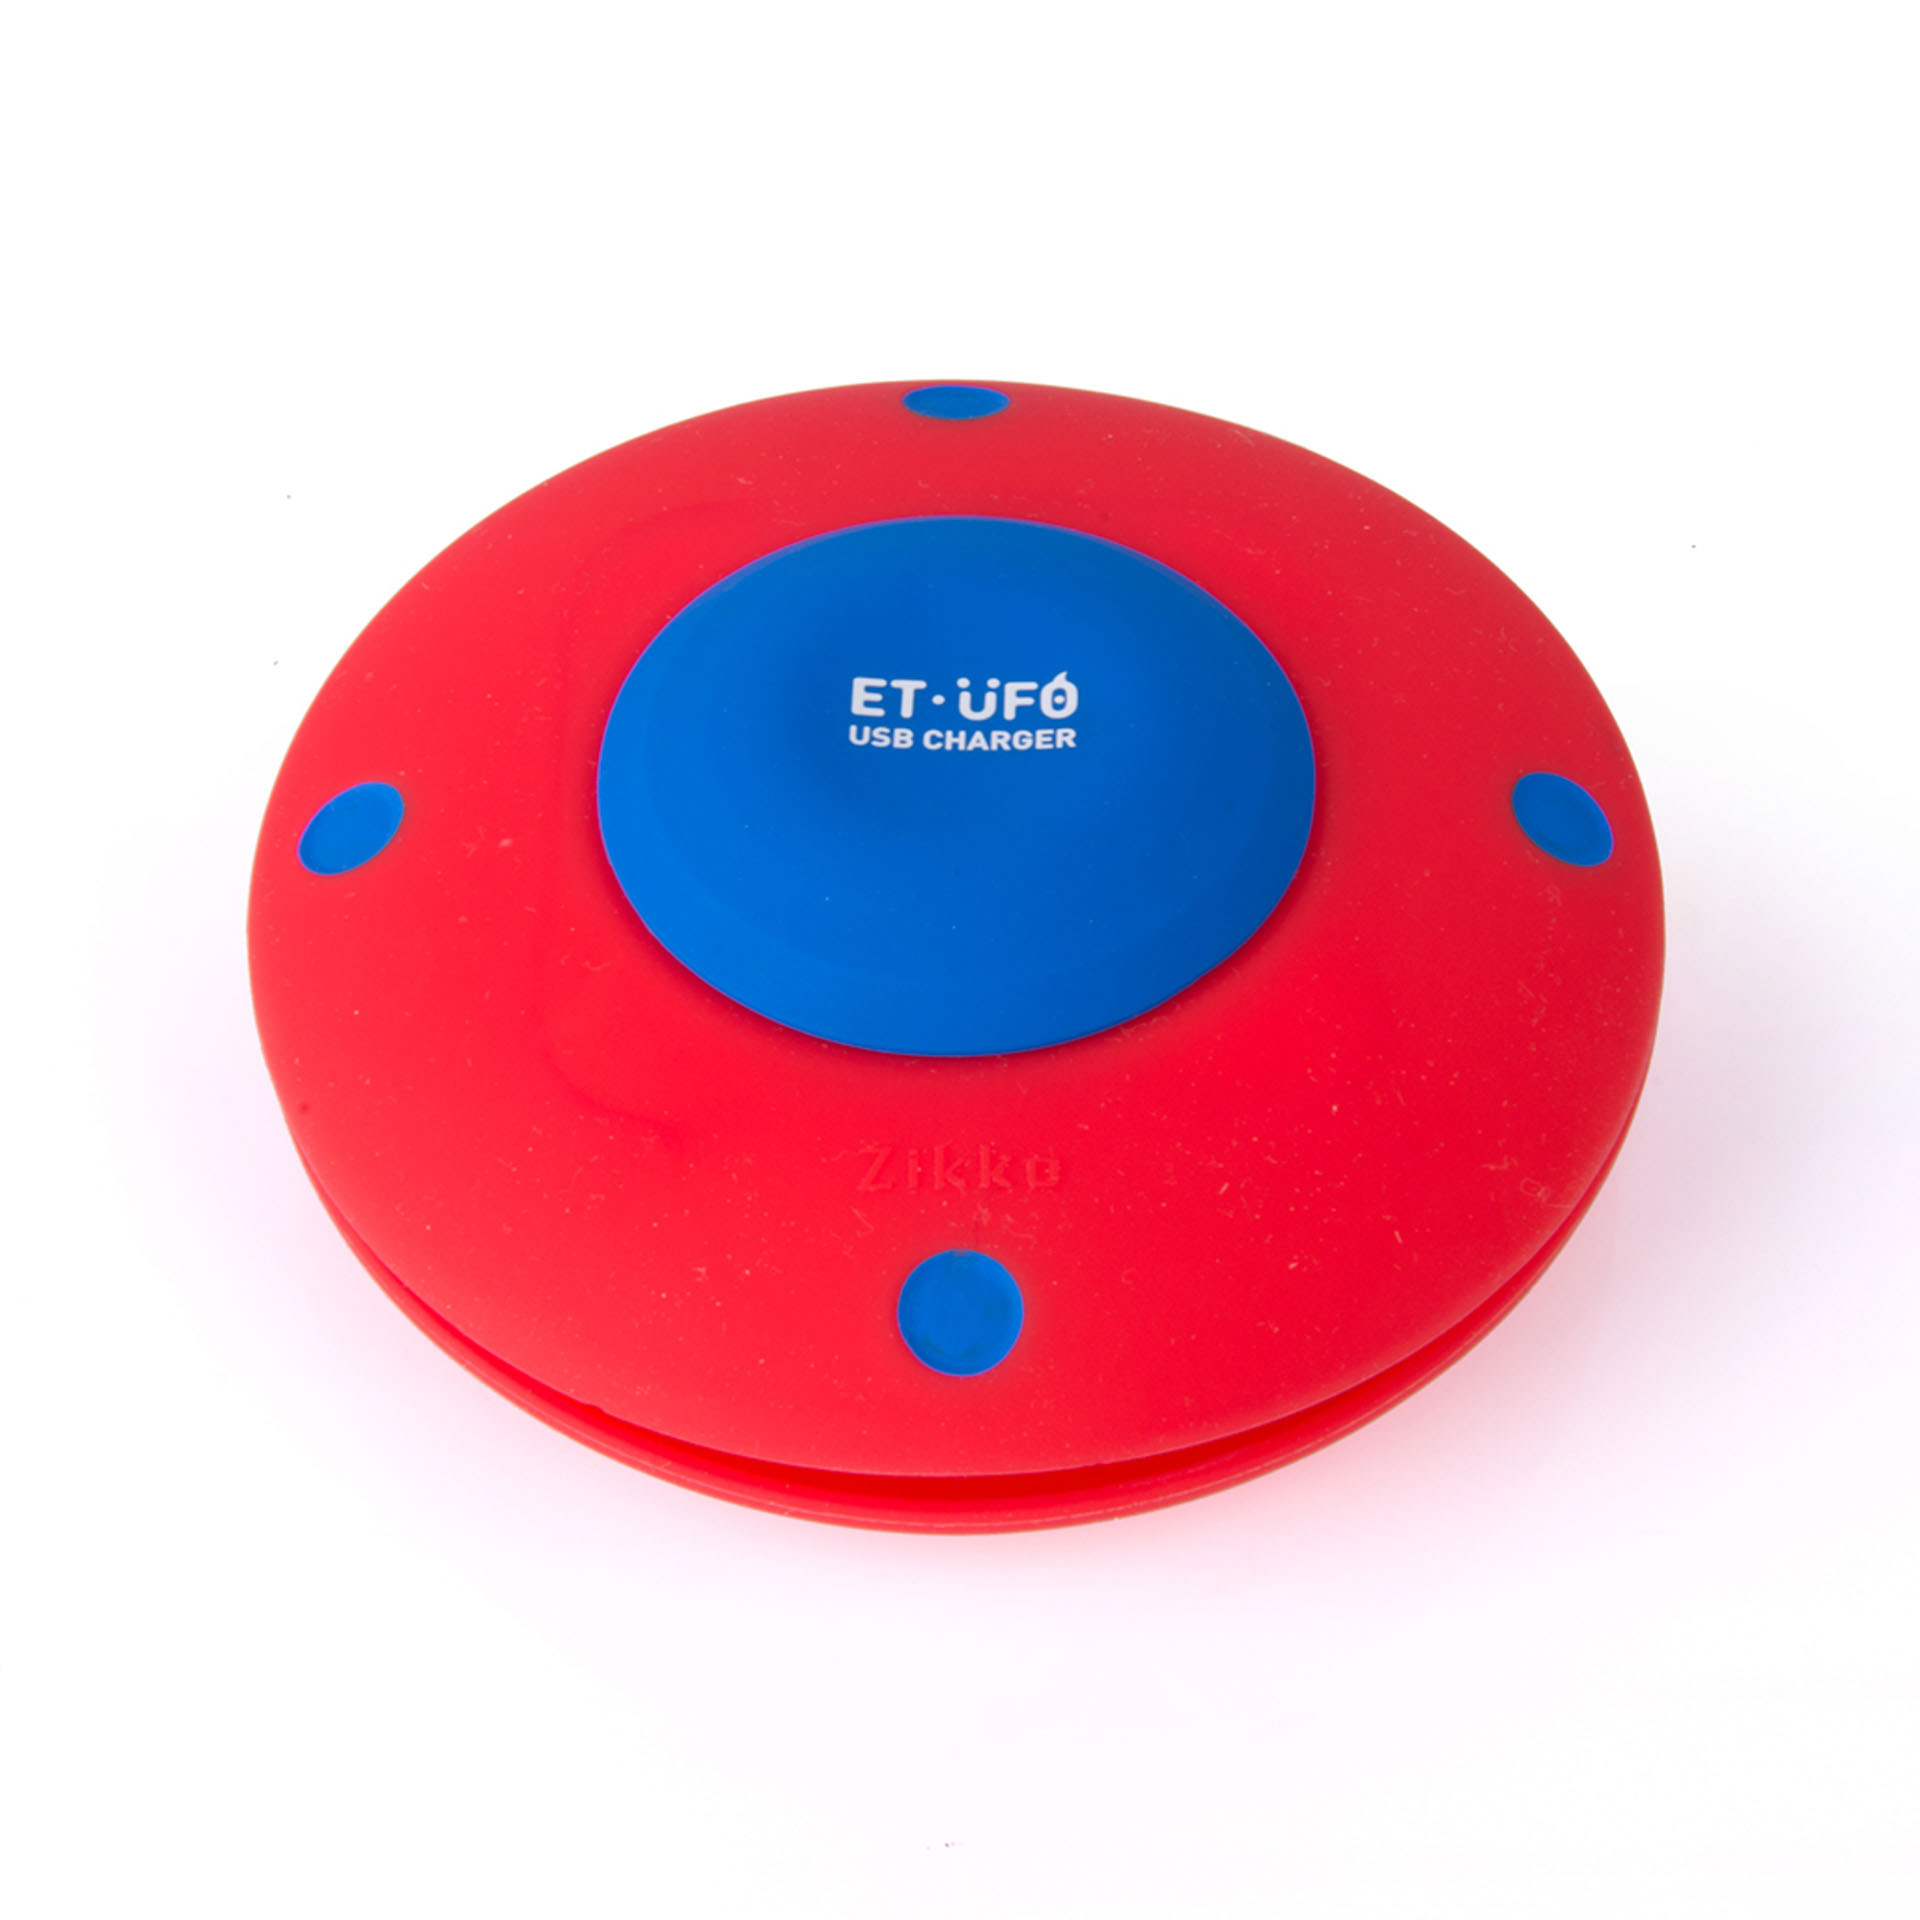 Caricatore 5 Porte Usb A Forma Di Ufo, Colore Rosso E Blue, , large